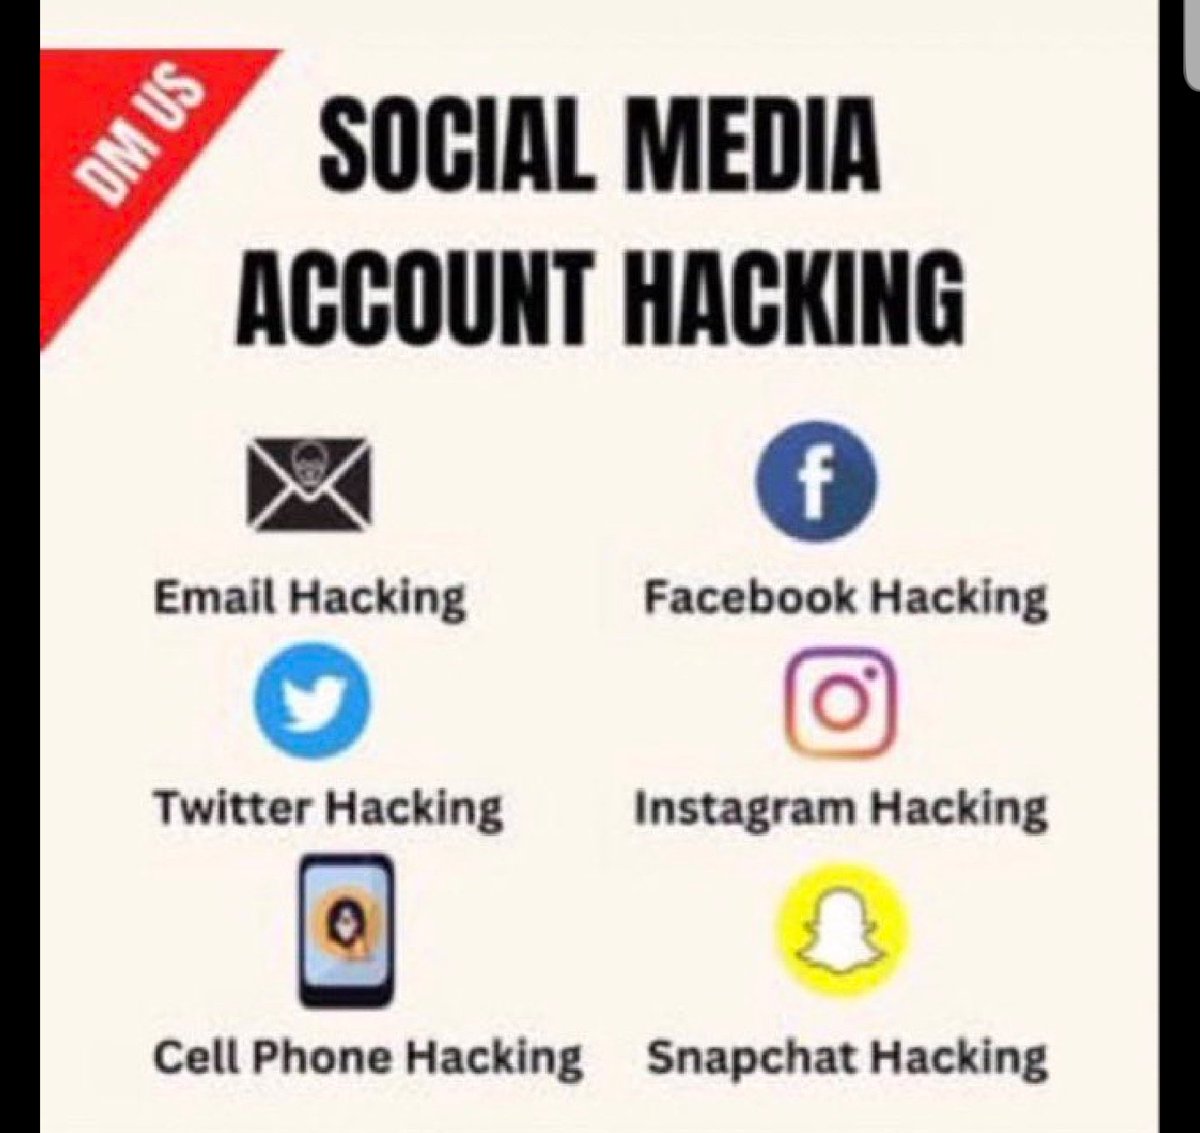 您的帐户是否遭到入侵或操纵？如果您需要任何黑客服务，请立即留言；您所需要的只是一个优秀的黑客。
#Hacked #icloud #snapchat #Discord #Roblox #missingphone #gmaildown #snapchatsupport #snapchat #NFT #CryptoInnovation